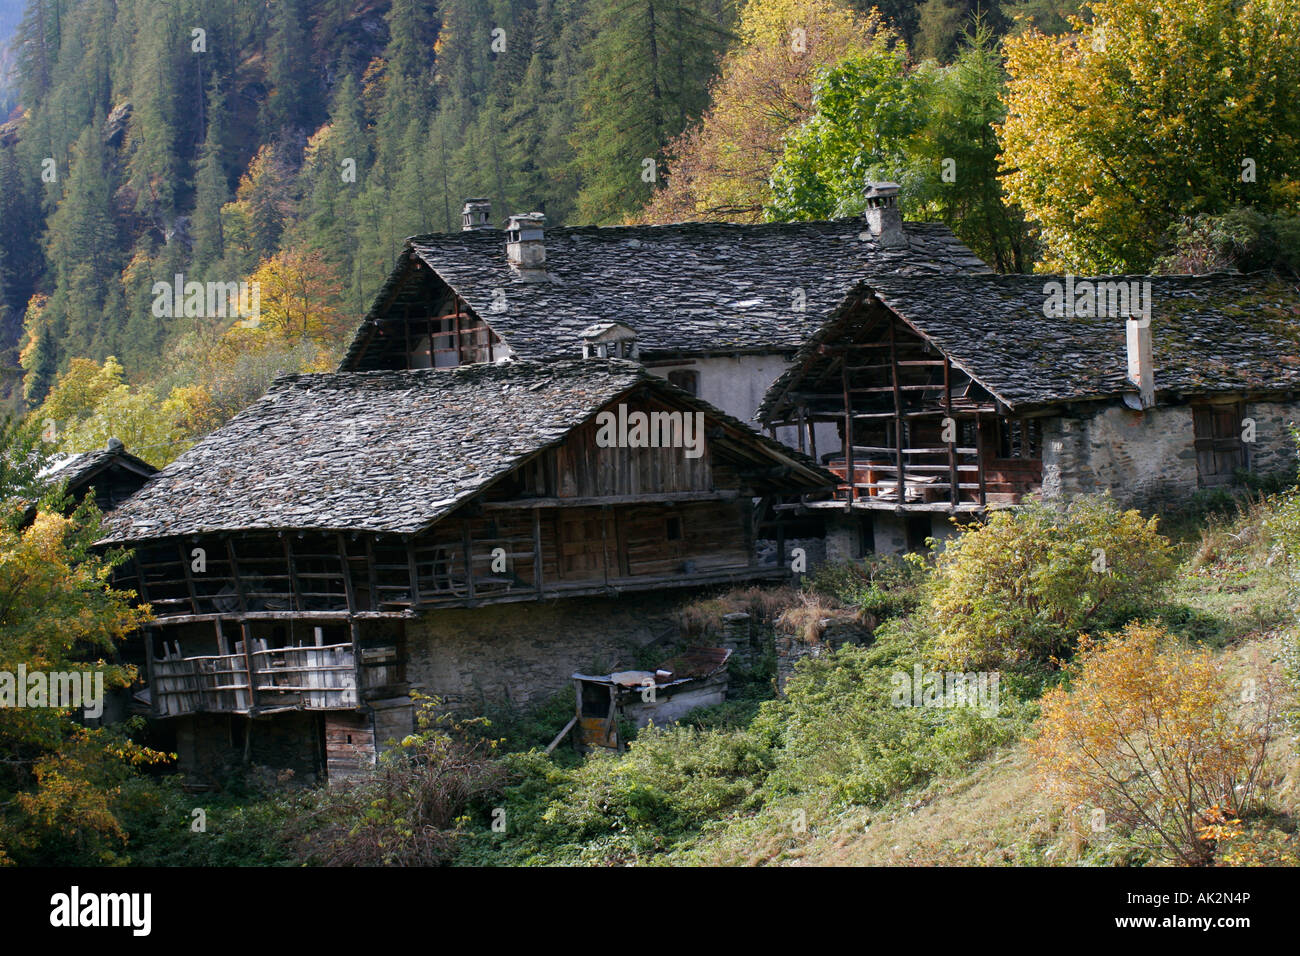 Typical walser house in Alpenzu village, Val Gressoney, Valle d'Aosta. Stock Photo